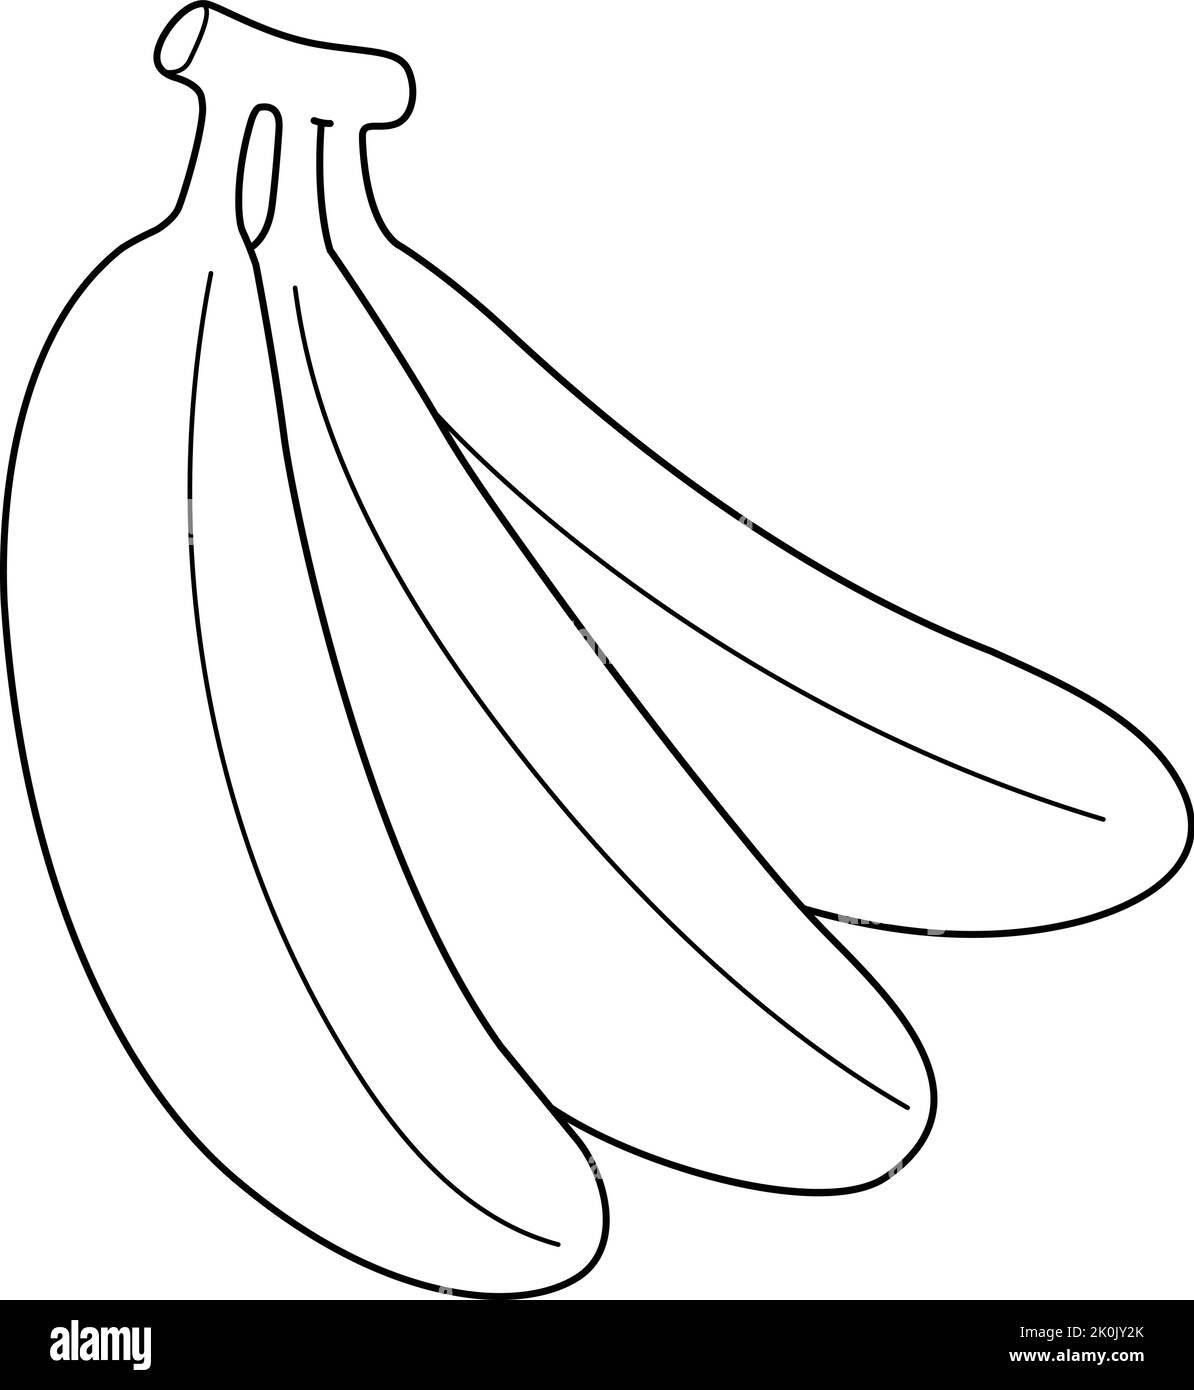 Page de coloriage isolée de fruits de banane pour les enfants Illustration de Vecteur